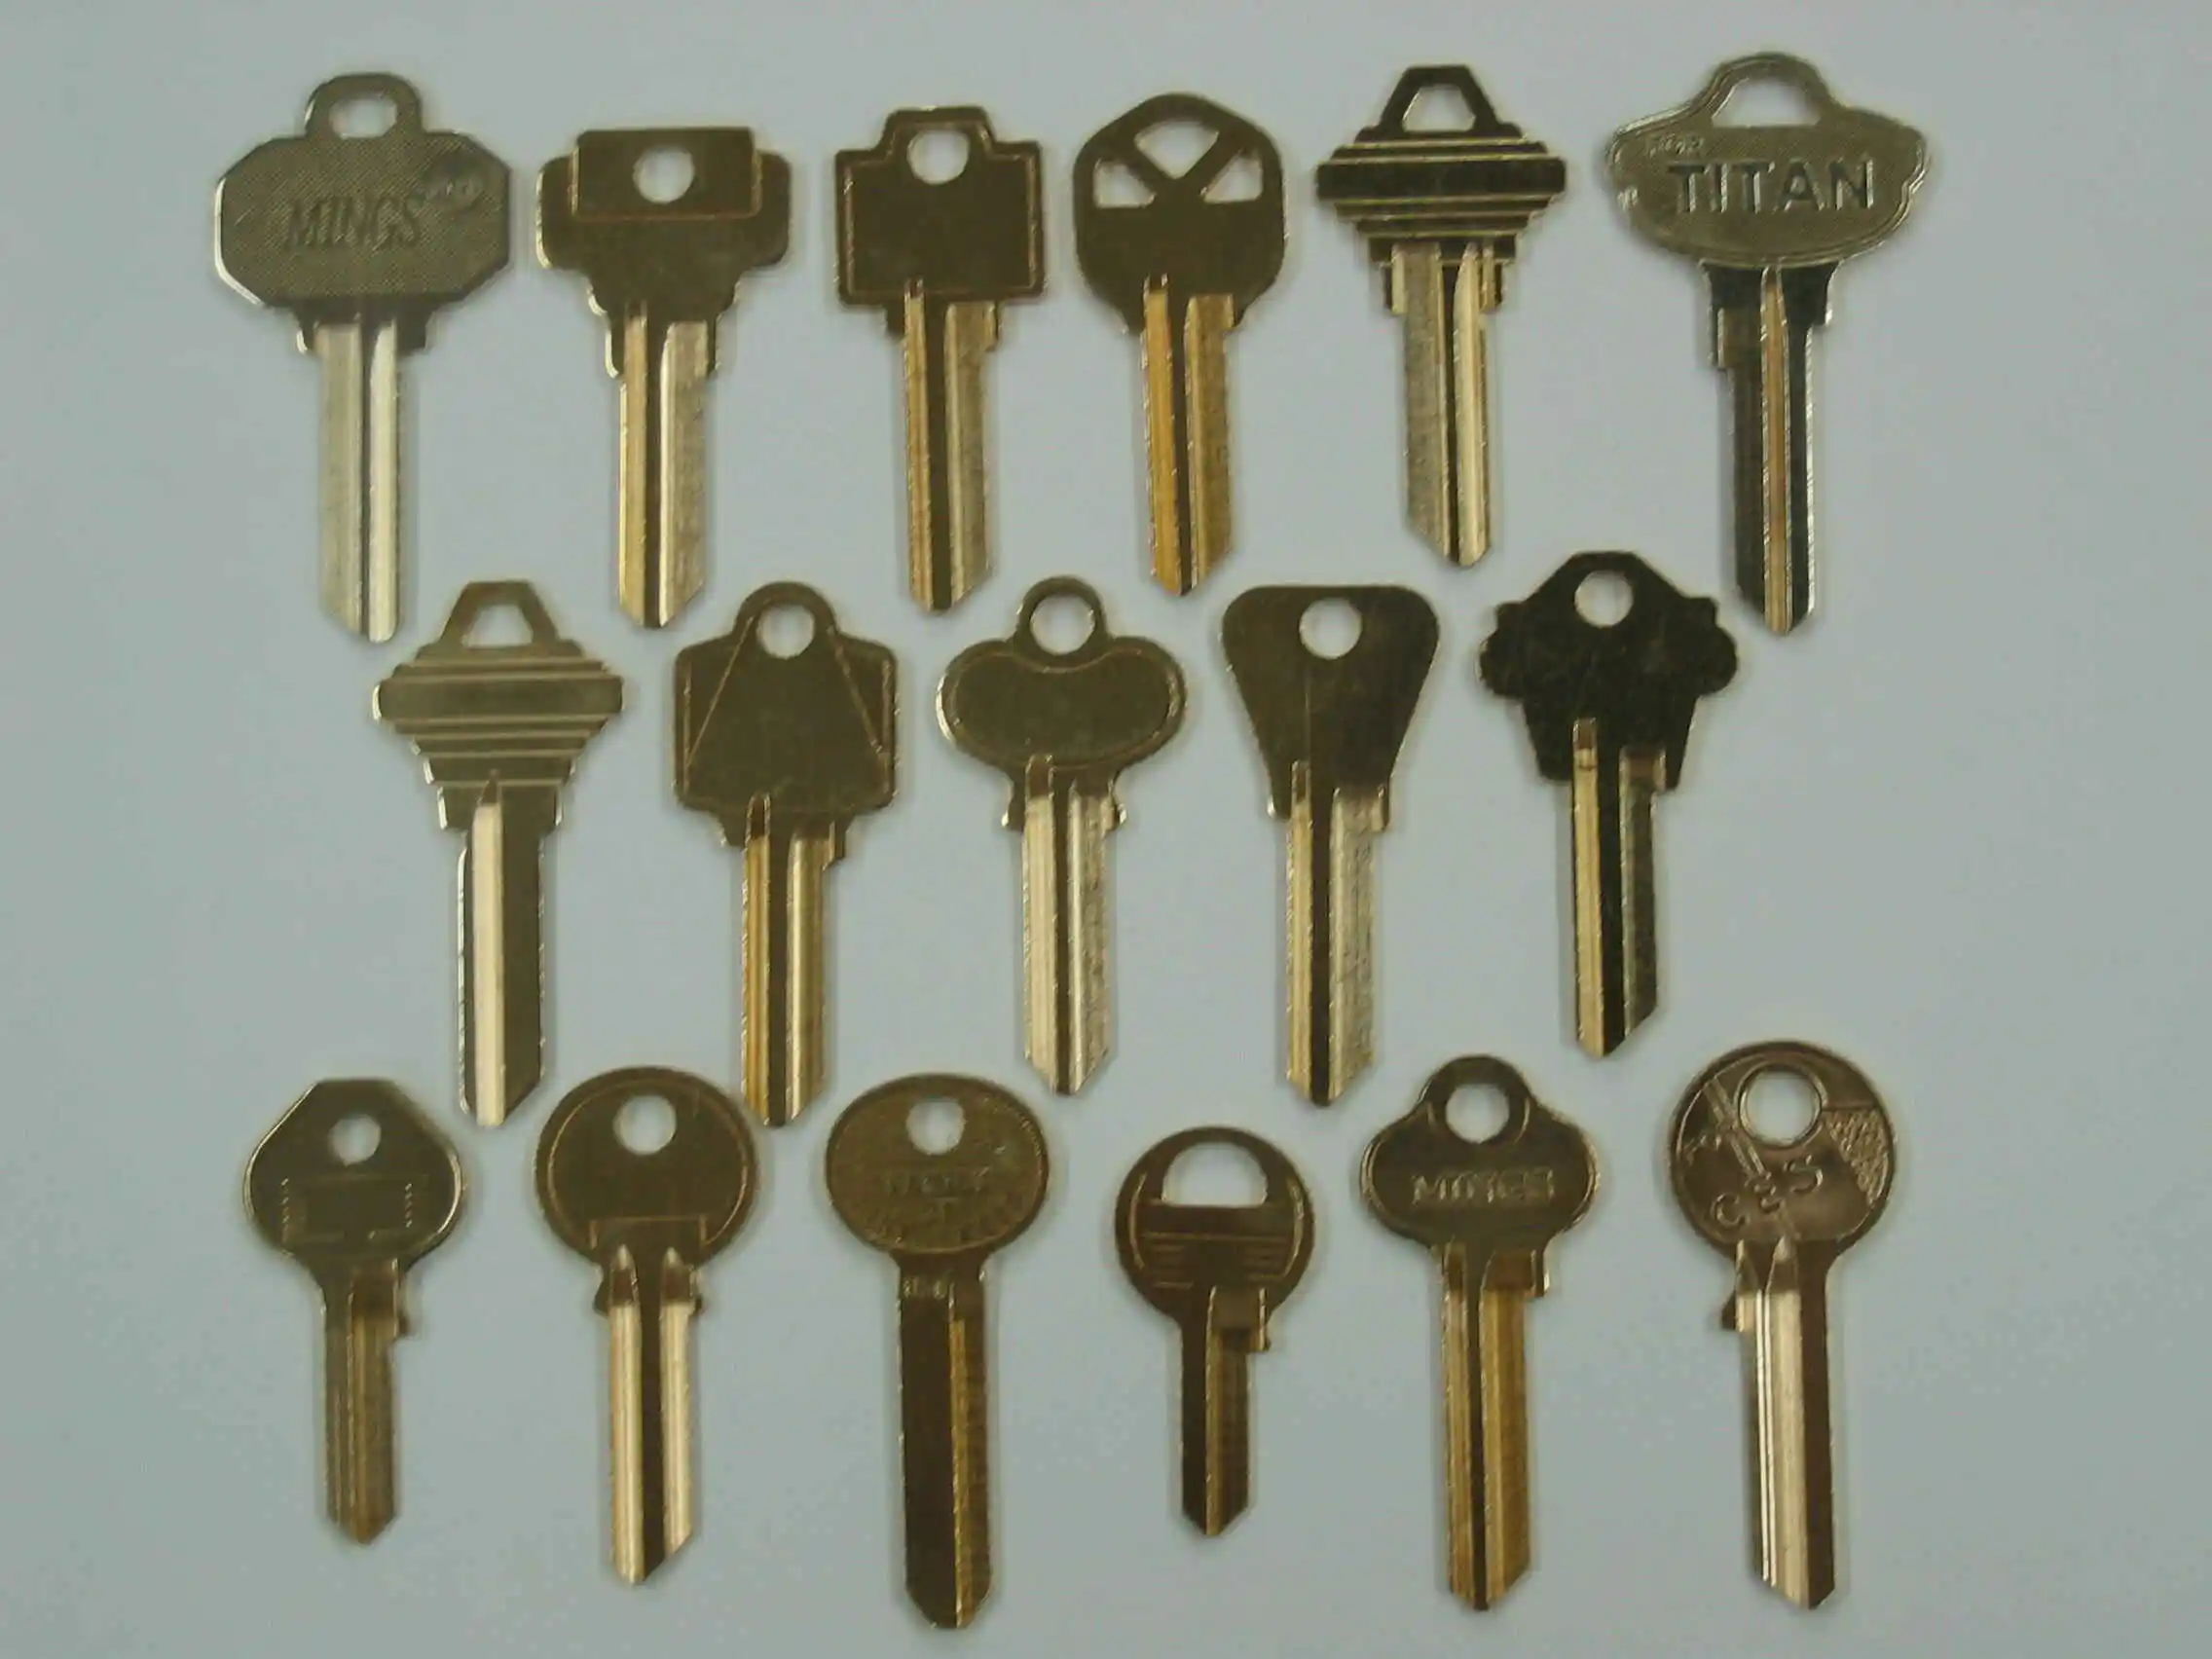 look alike solid brass key blank